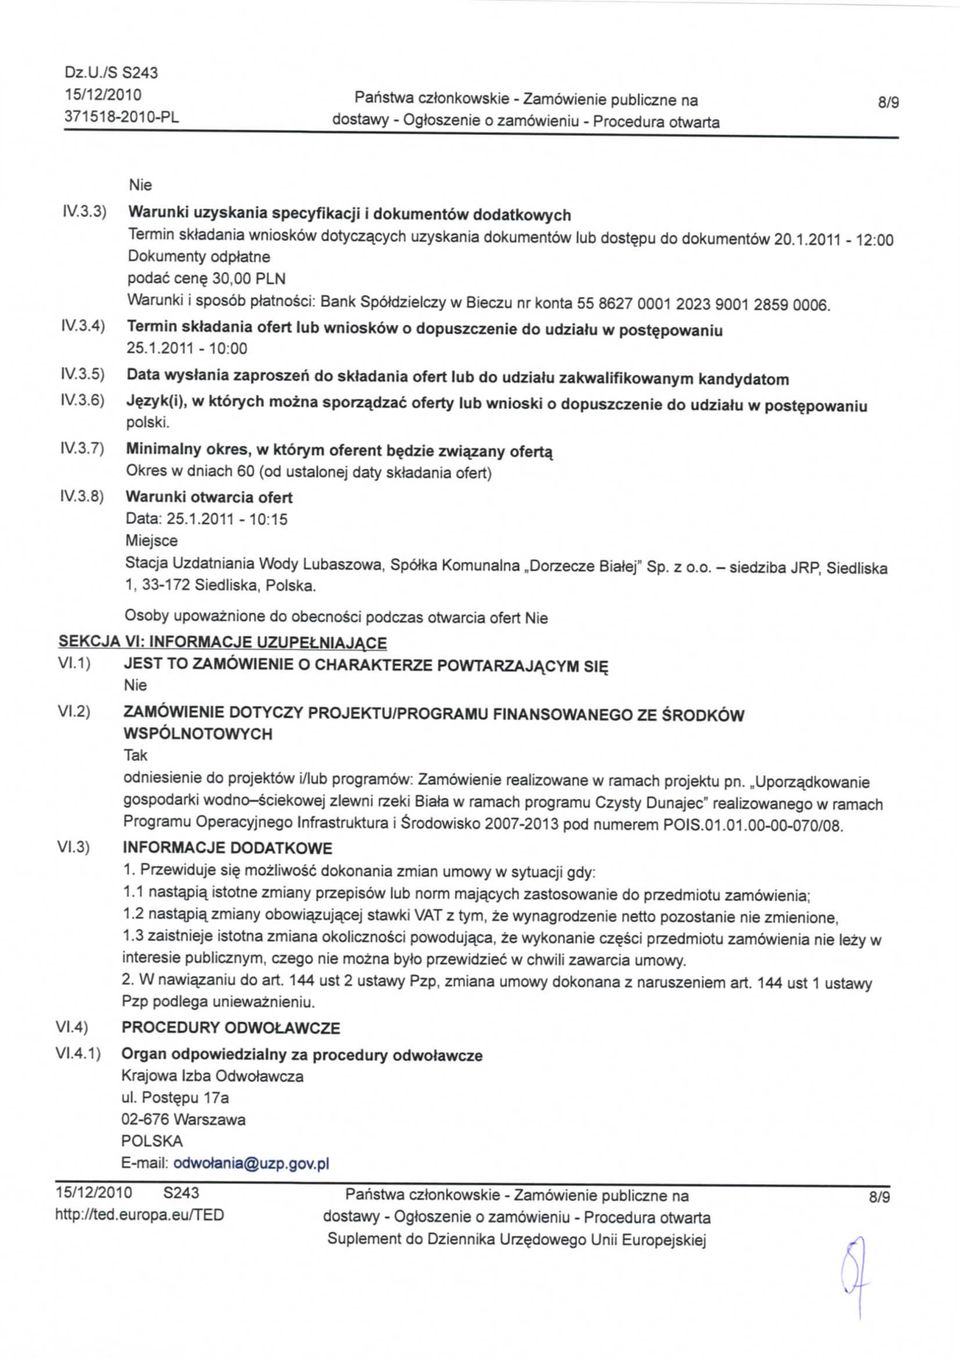 2011-12:00 Dokumenty odptetne podac cene. 30,00 PLN Warunki i sposob platnosci: Bank Spotdzielczy w Bieczu nr konta 55 8627 0001 2023 9001 2859 0006.